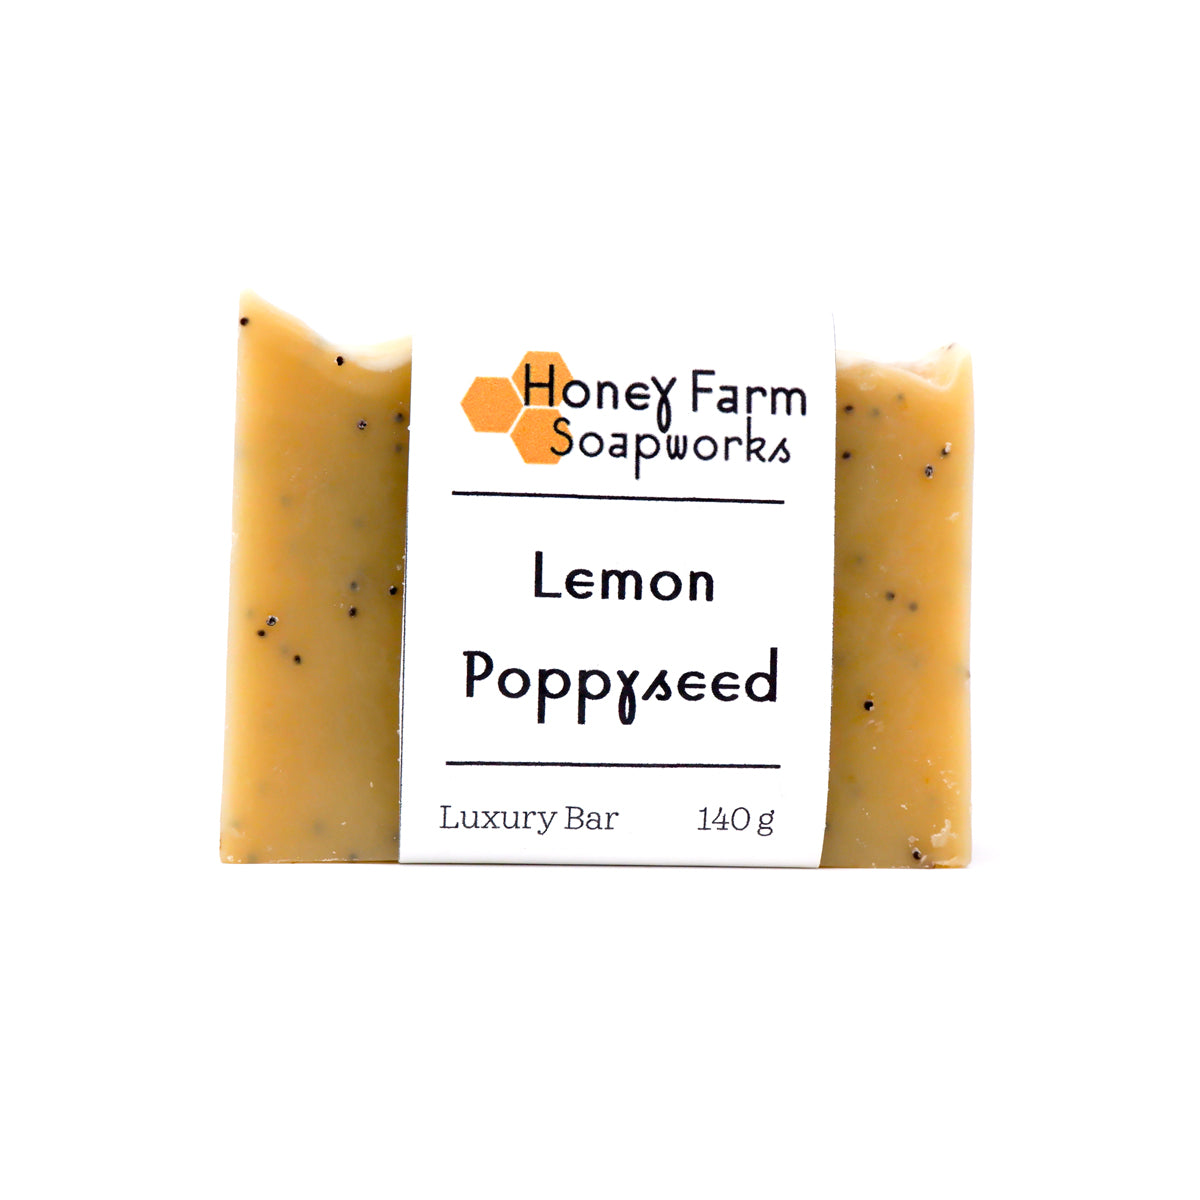 Lemon Poppyseed Soap Bar